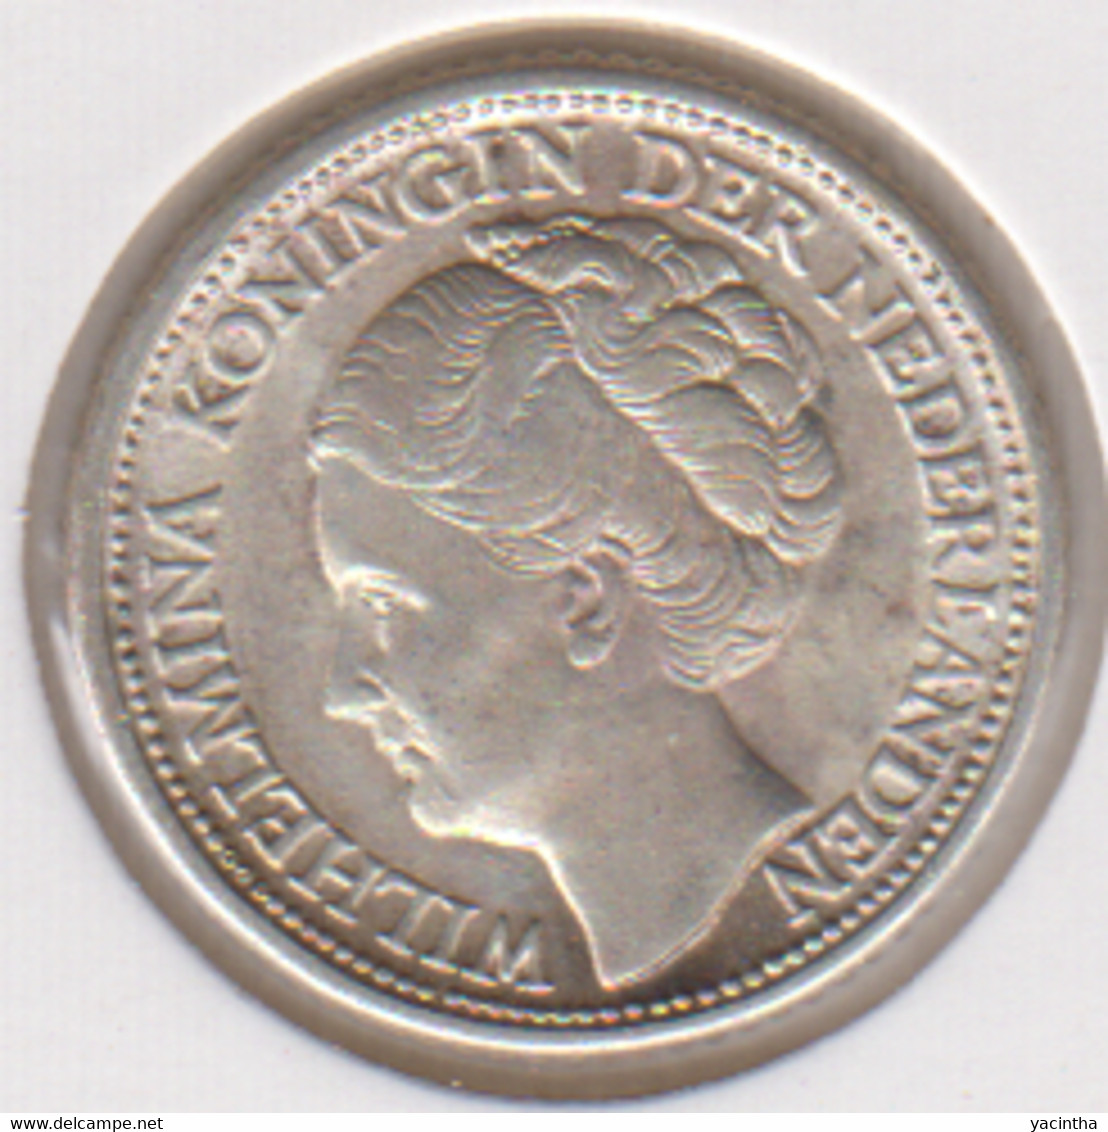 @Y@    Nederland  25 Cent   Wilhelmina 1943        (5229)   Prachtig / Fdc - 2.5 Centavos